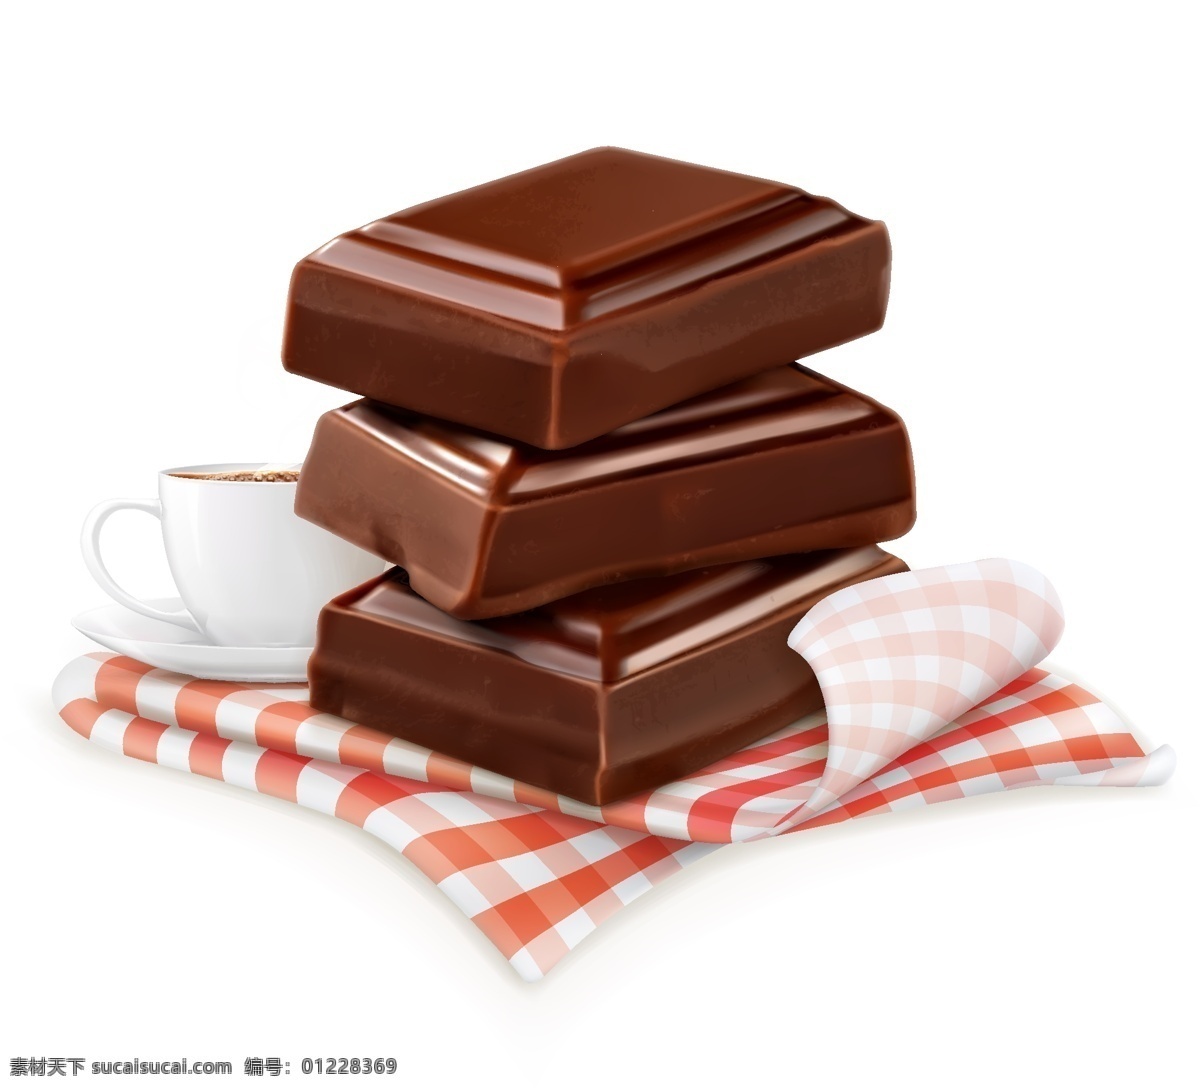 巧克力 甜点 浪漫 巧克力主图 巧克力促销 巧克力活动 情人节 礼物 巧克力酱 香浓巧克力 热巧克力 热可可 香浓 糖果 矢量素材 矢量 矢量巧克力 巧克力素材